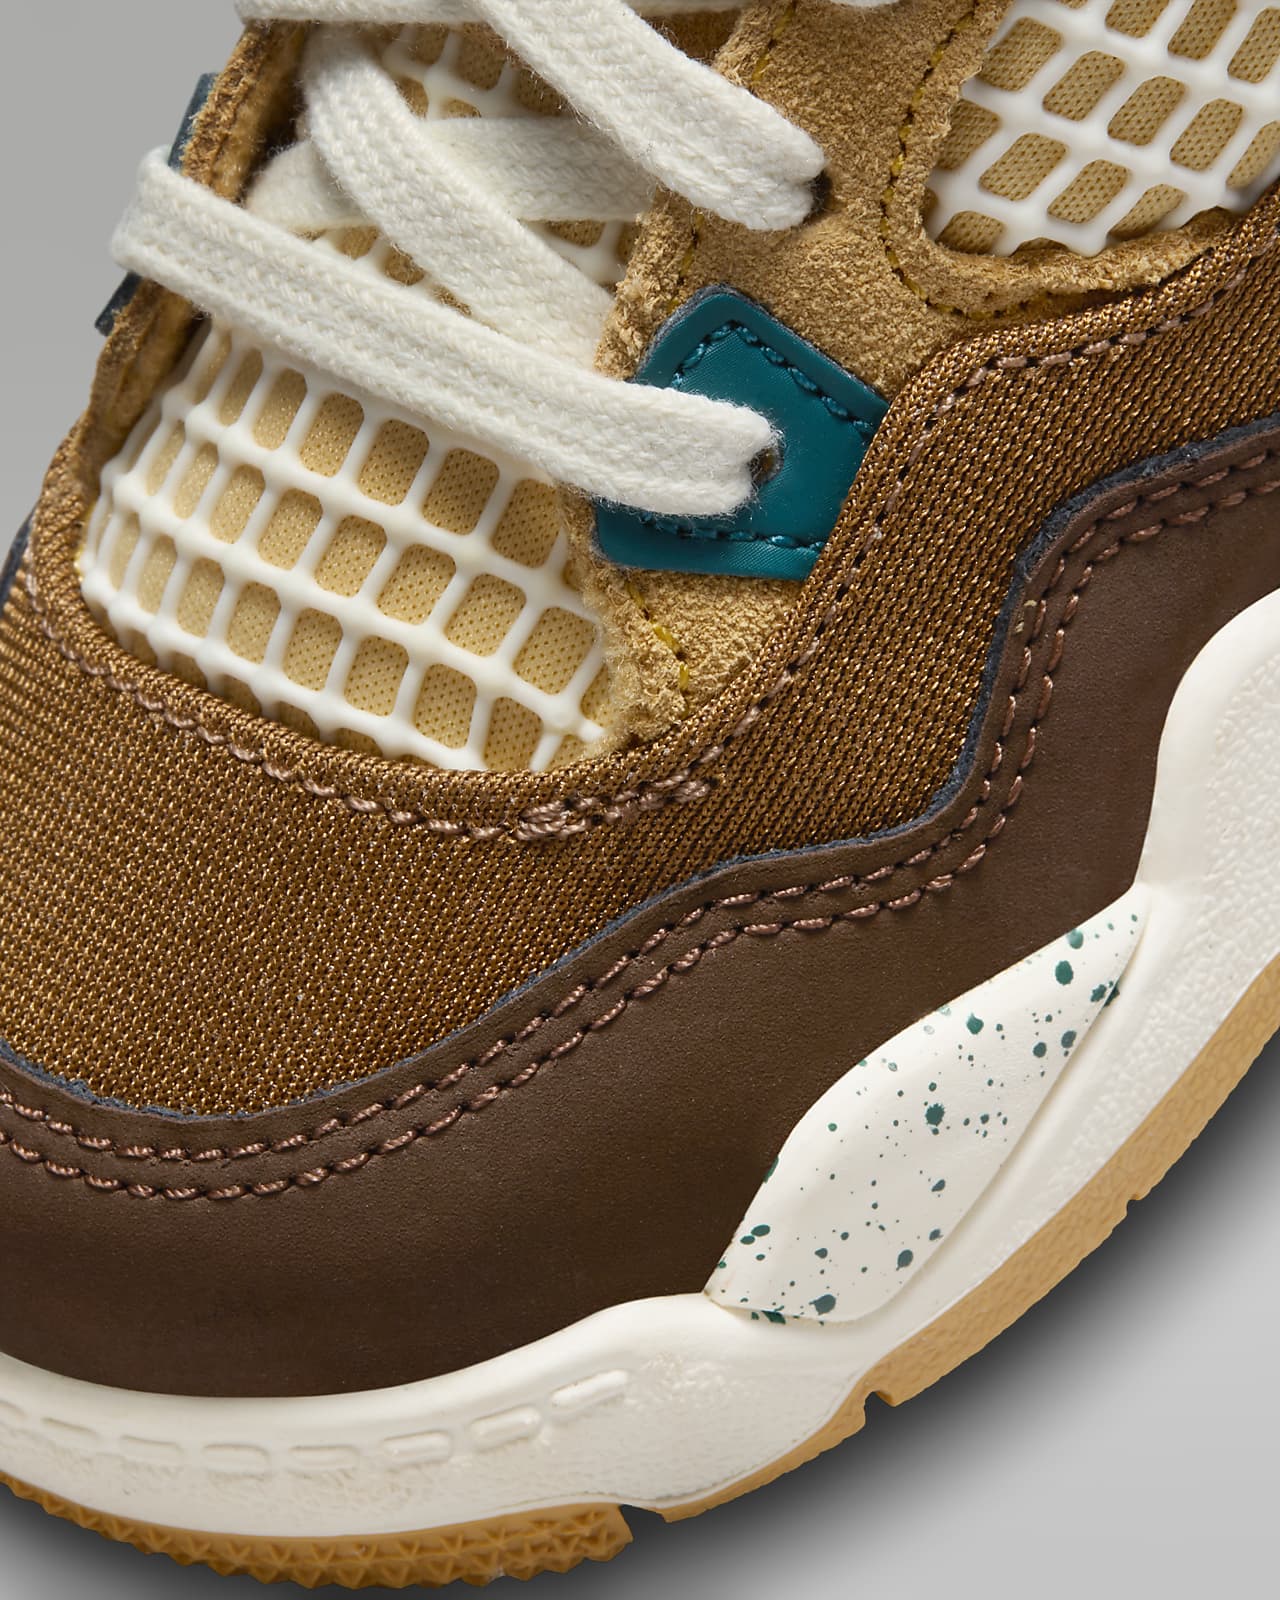 Jordan 4 Retro Baby/Toddler Shoes.